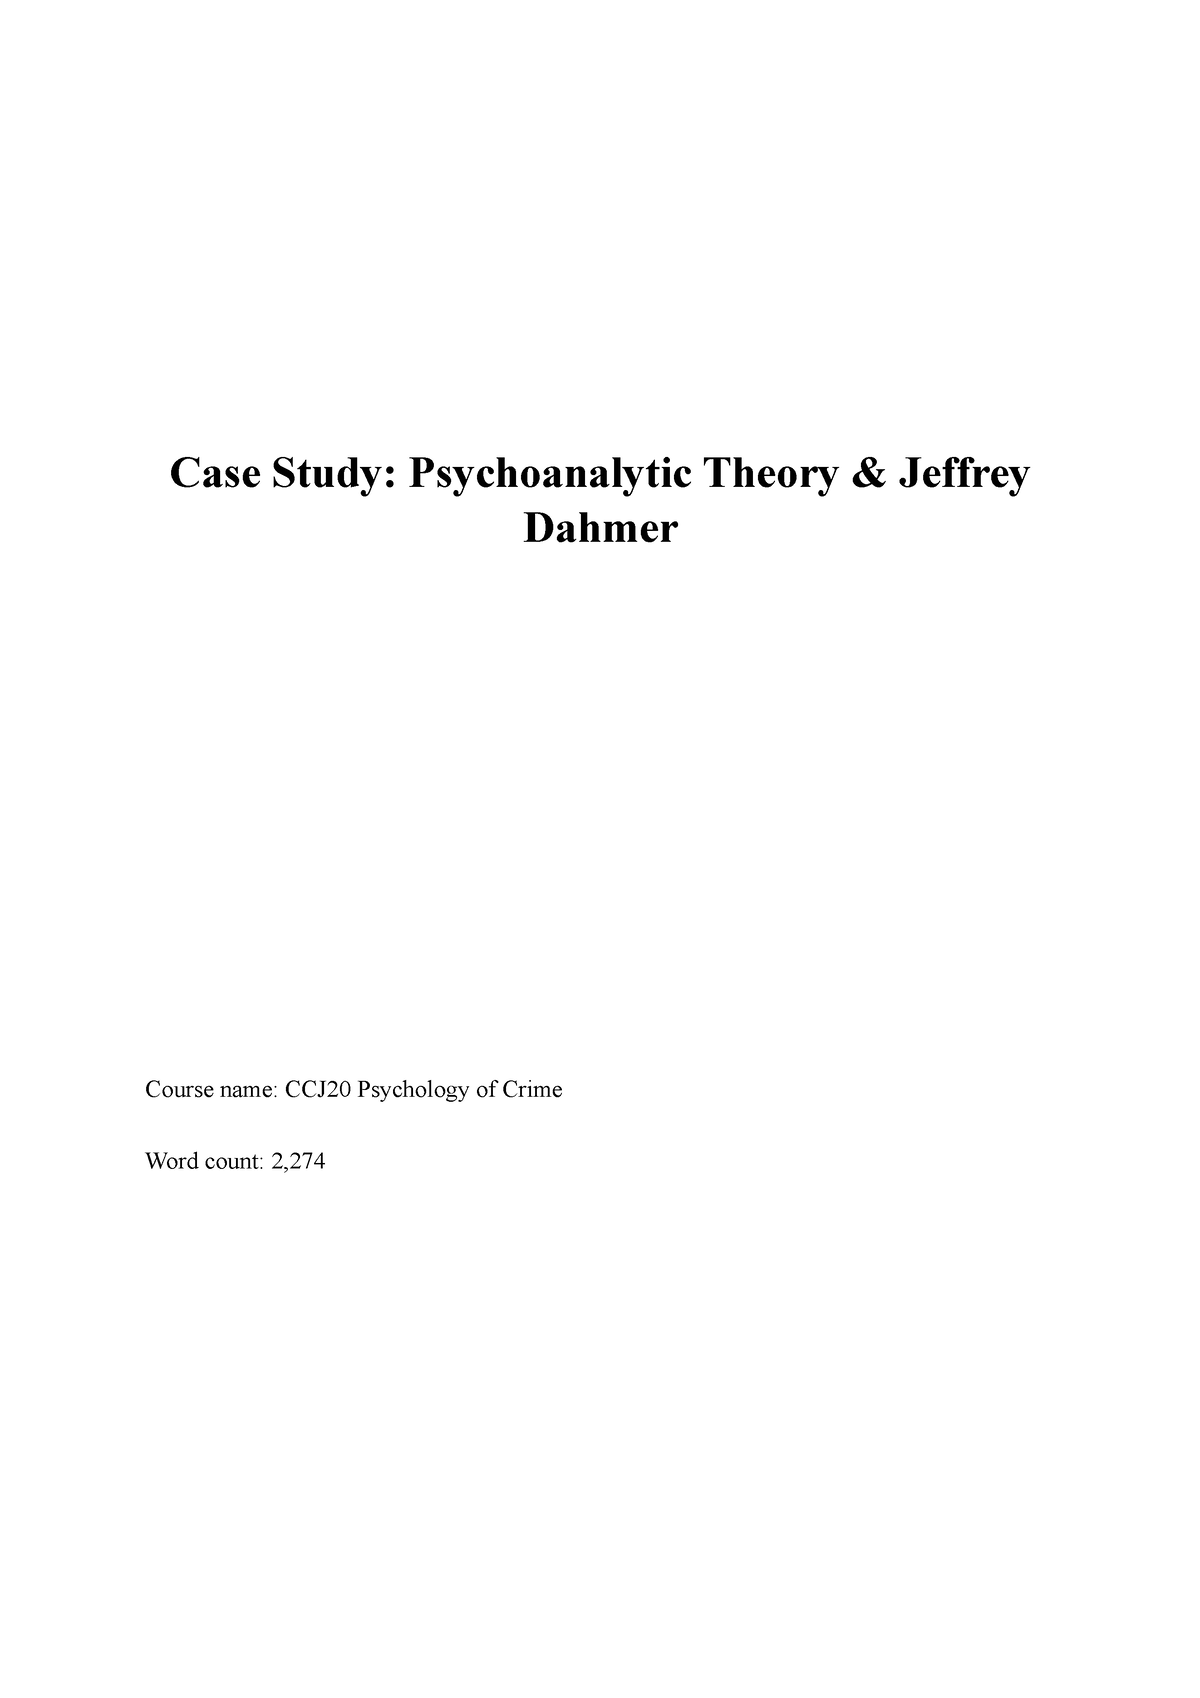 psychology of crime case study